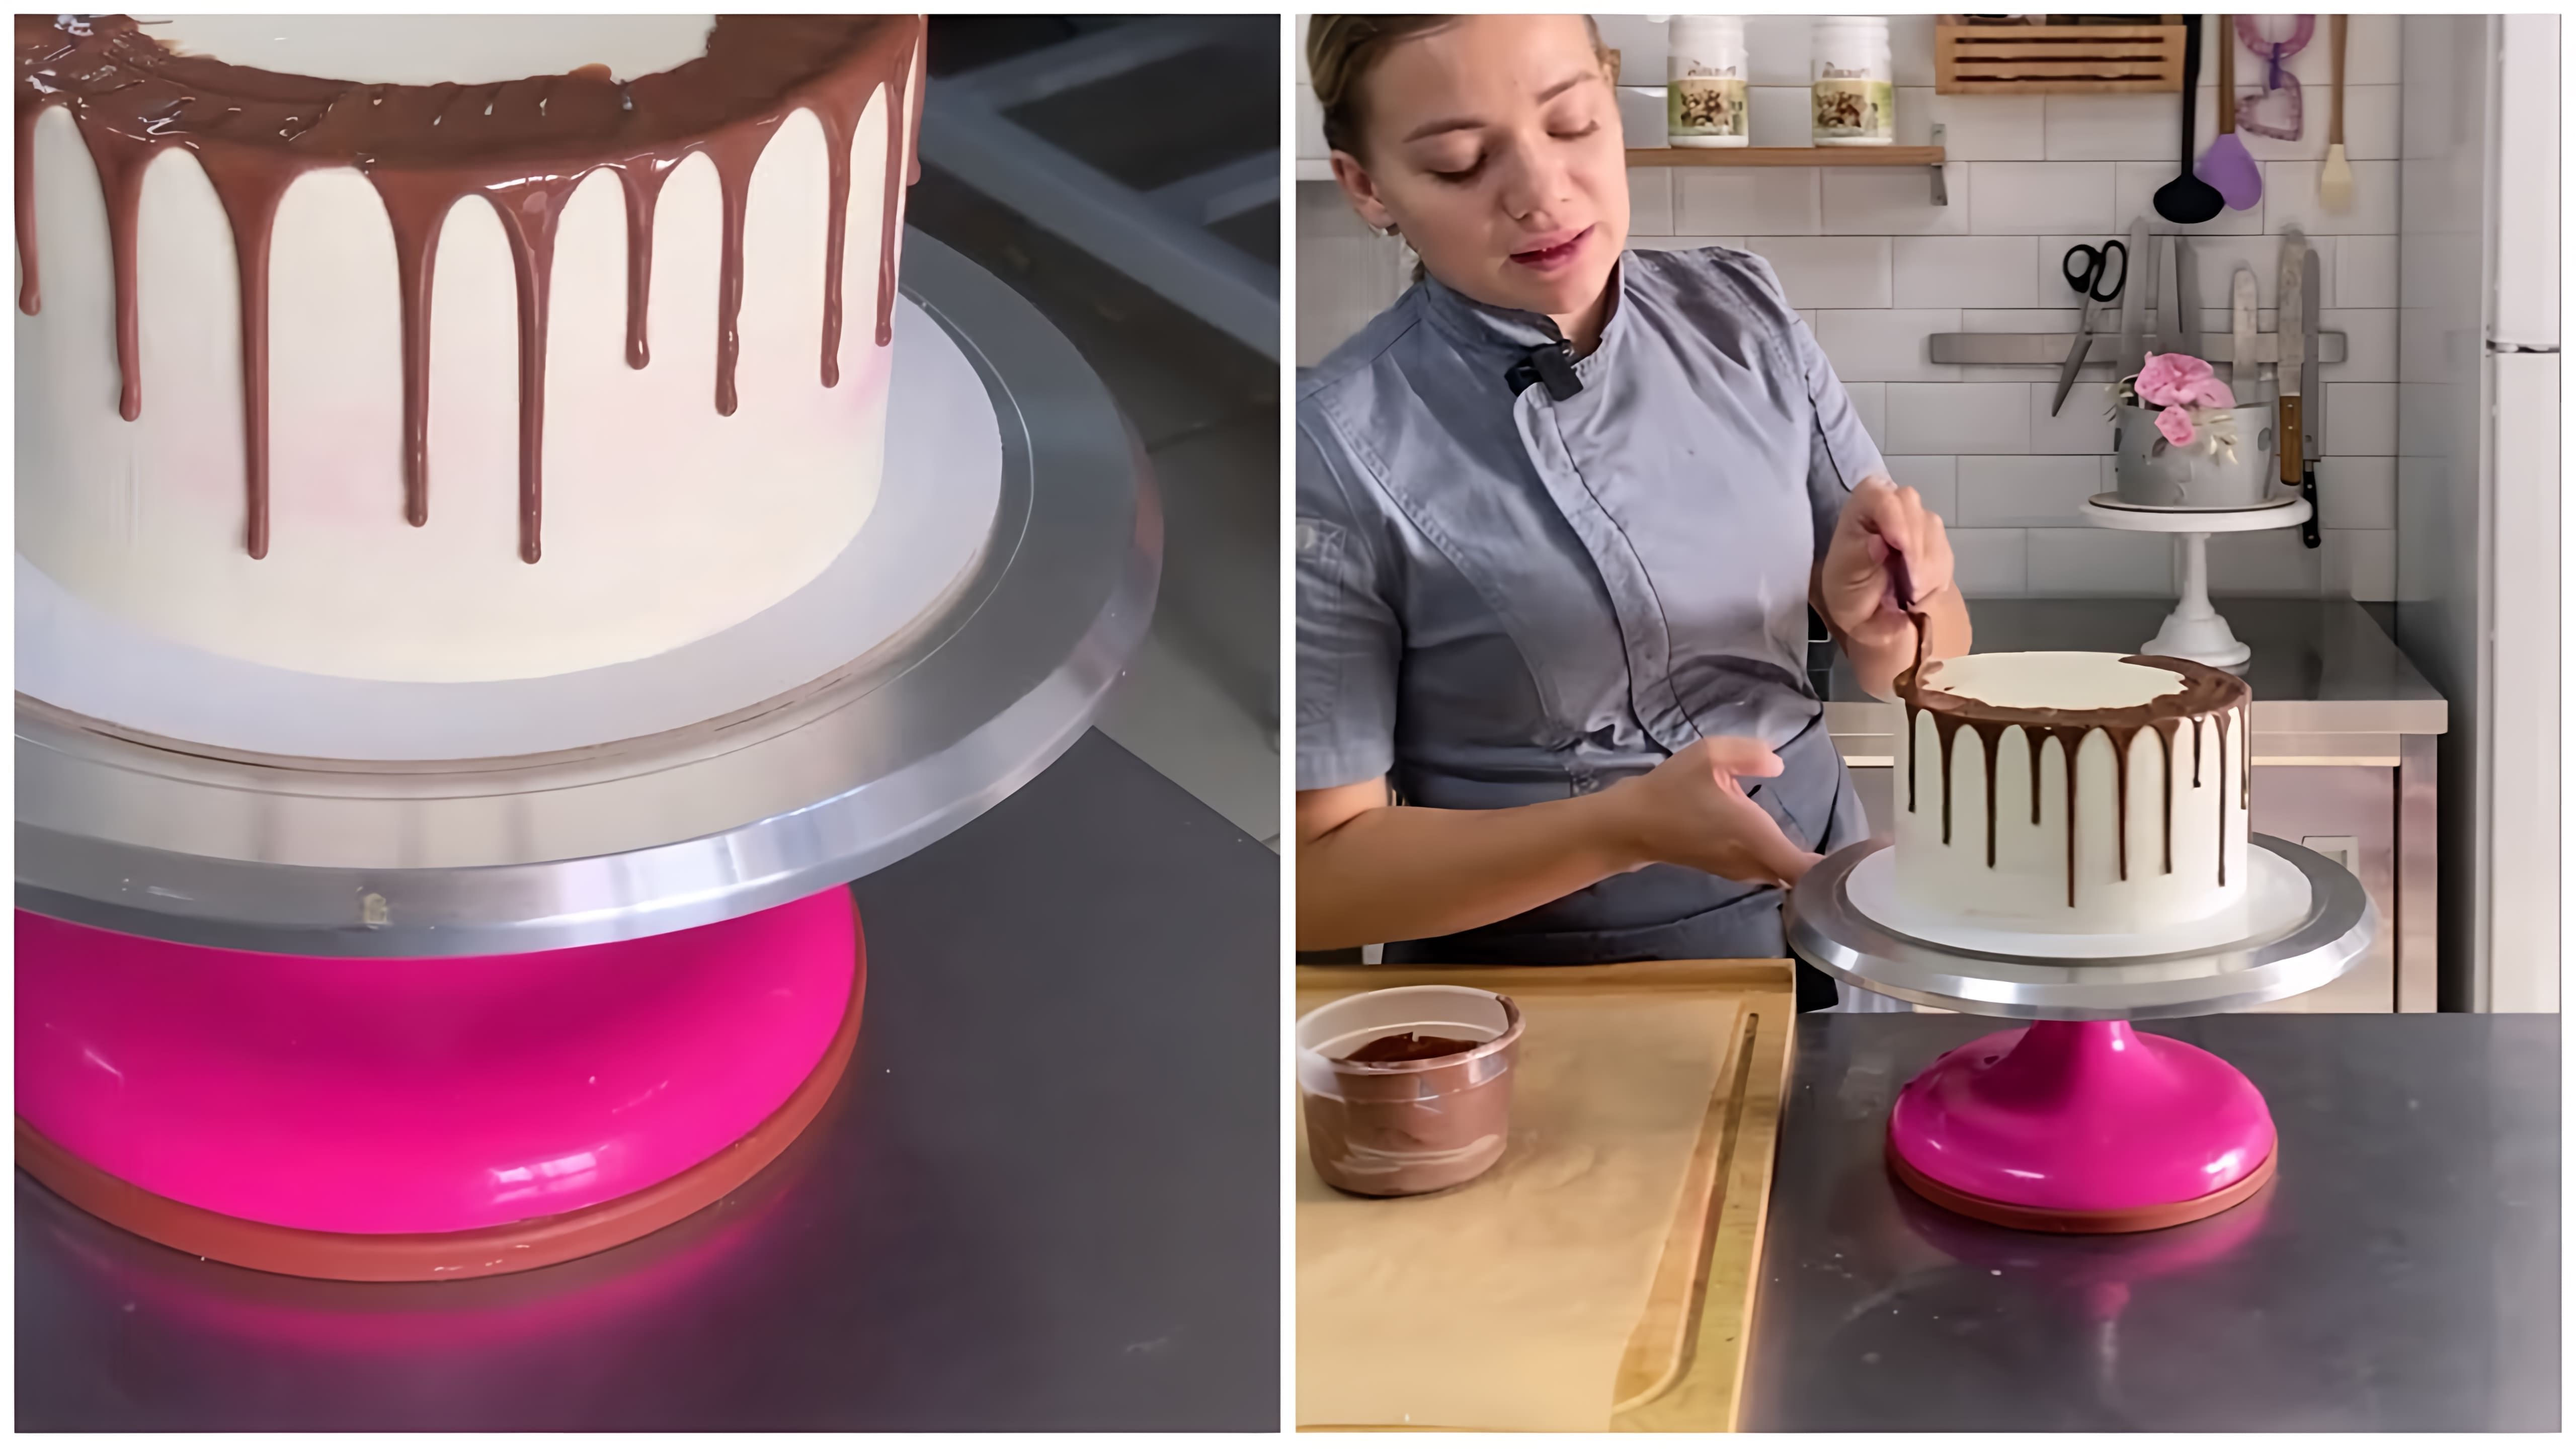 В этом видео-ролике мы увидим, как на торте появляются подтёки